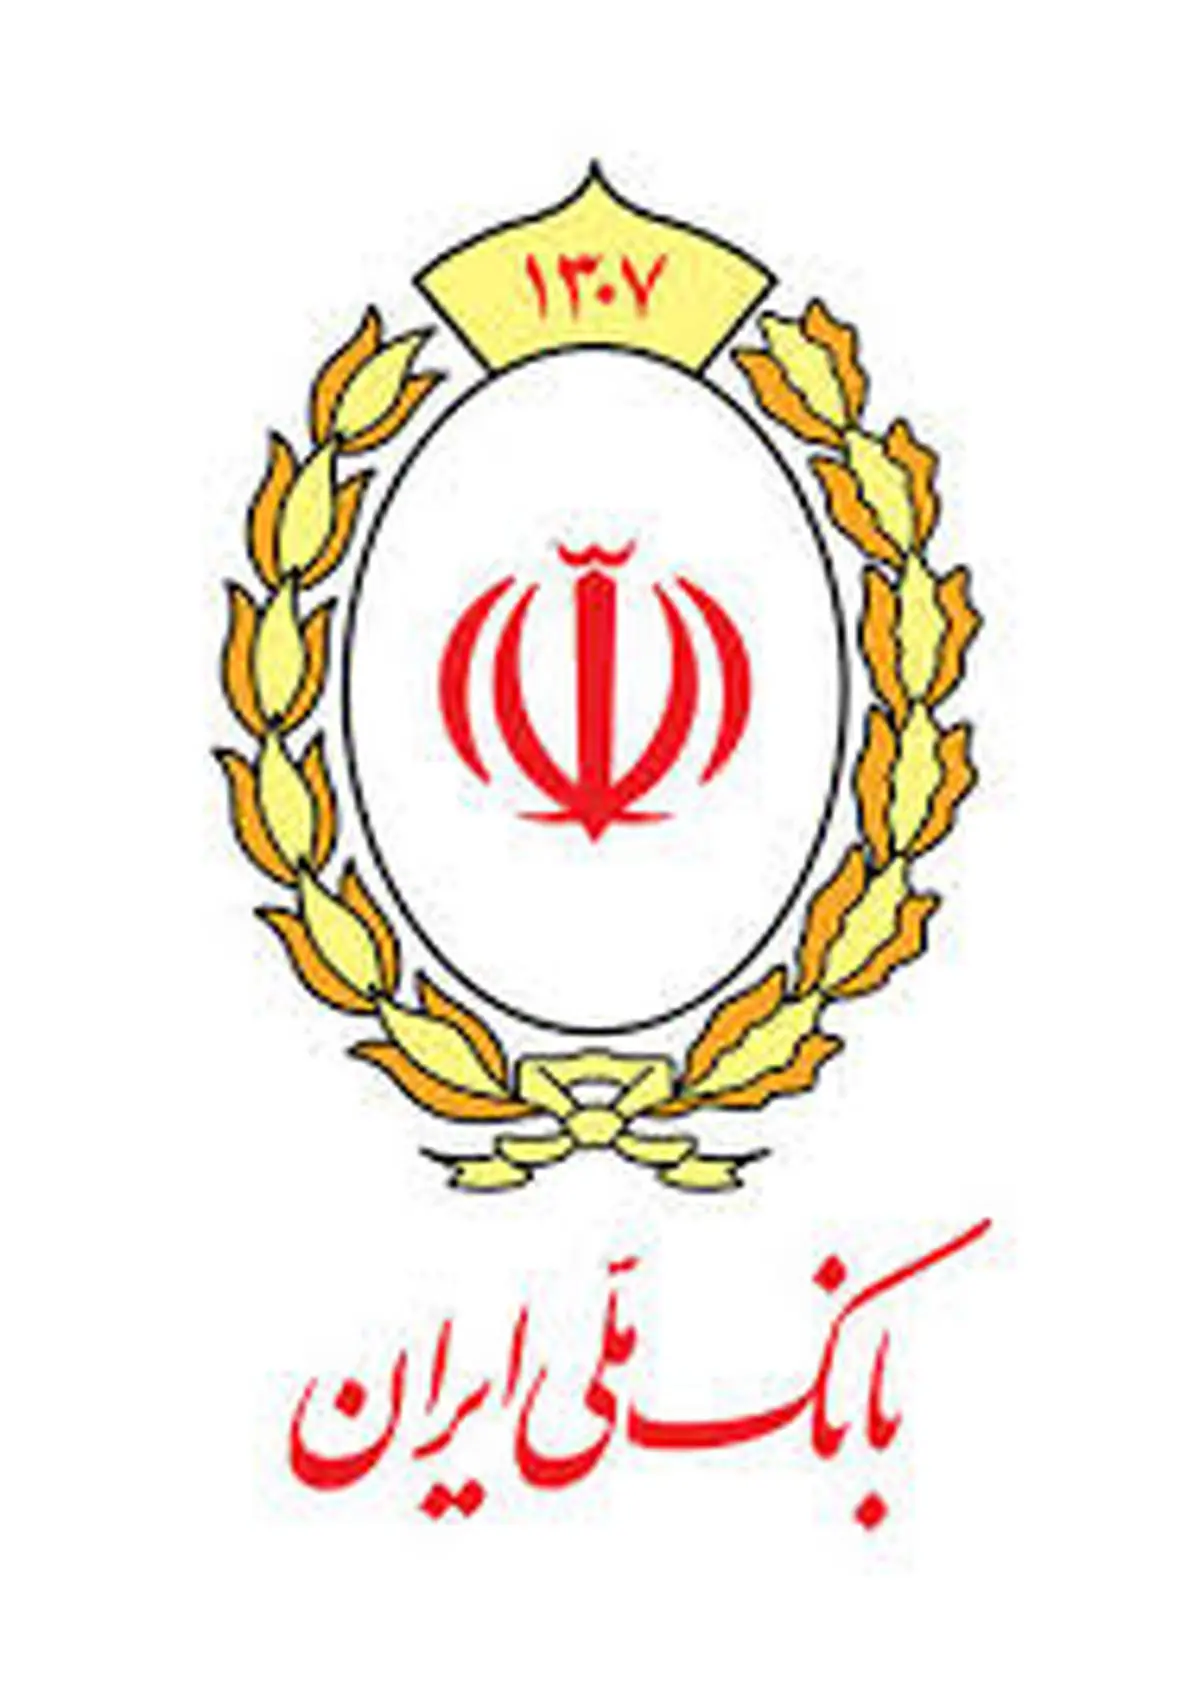 هشدار بانک ملی ایران درباره کلاهبرداری های تلفنی و اینترنتی

